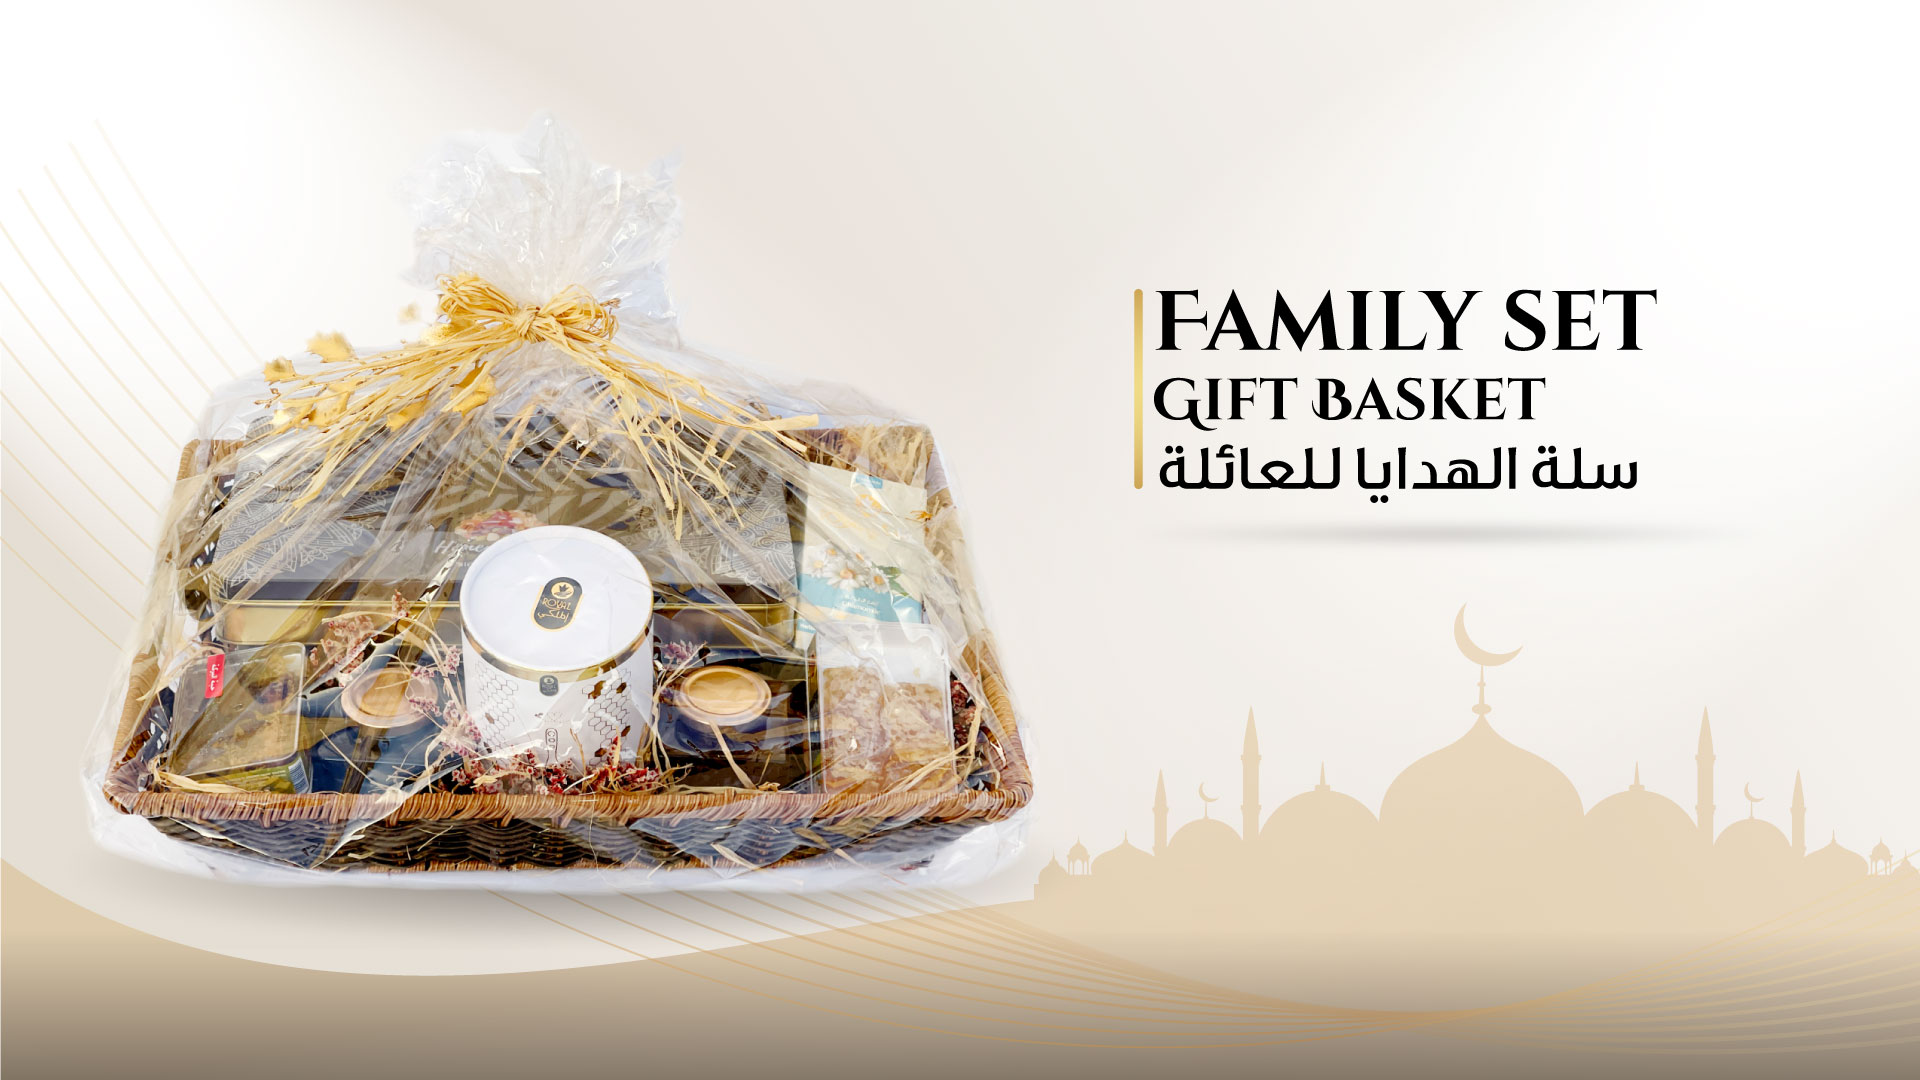 Family Gift Basket for Eid